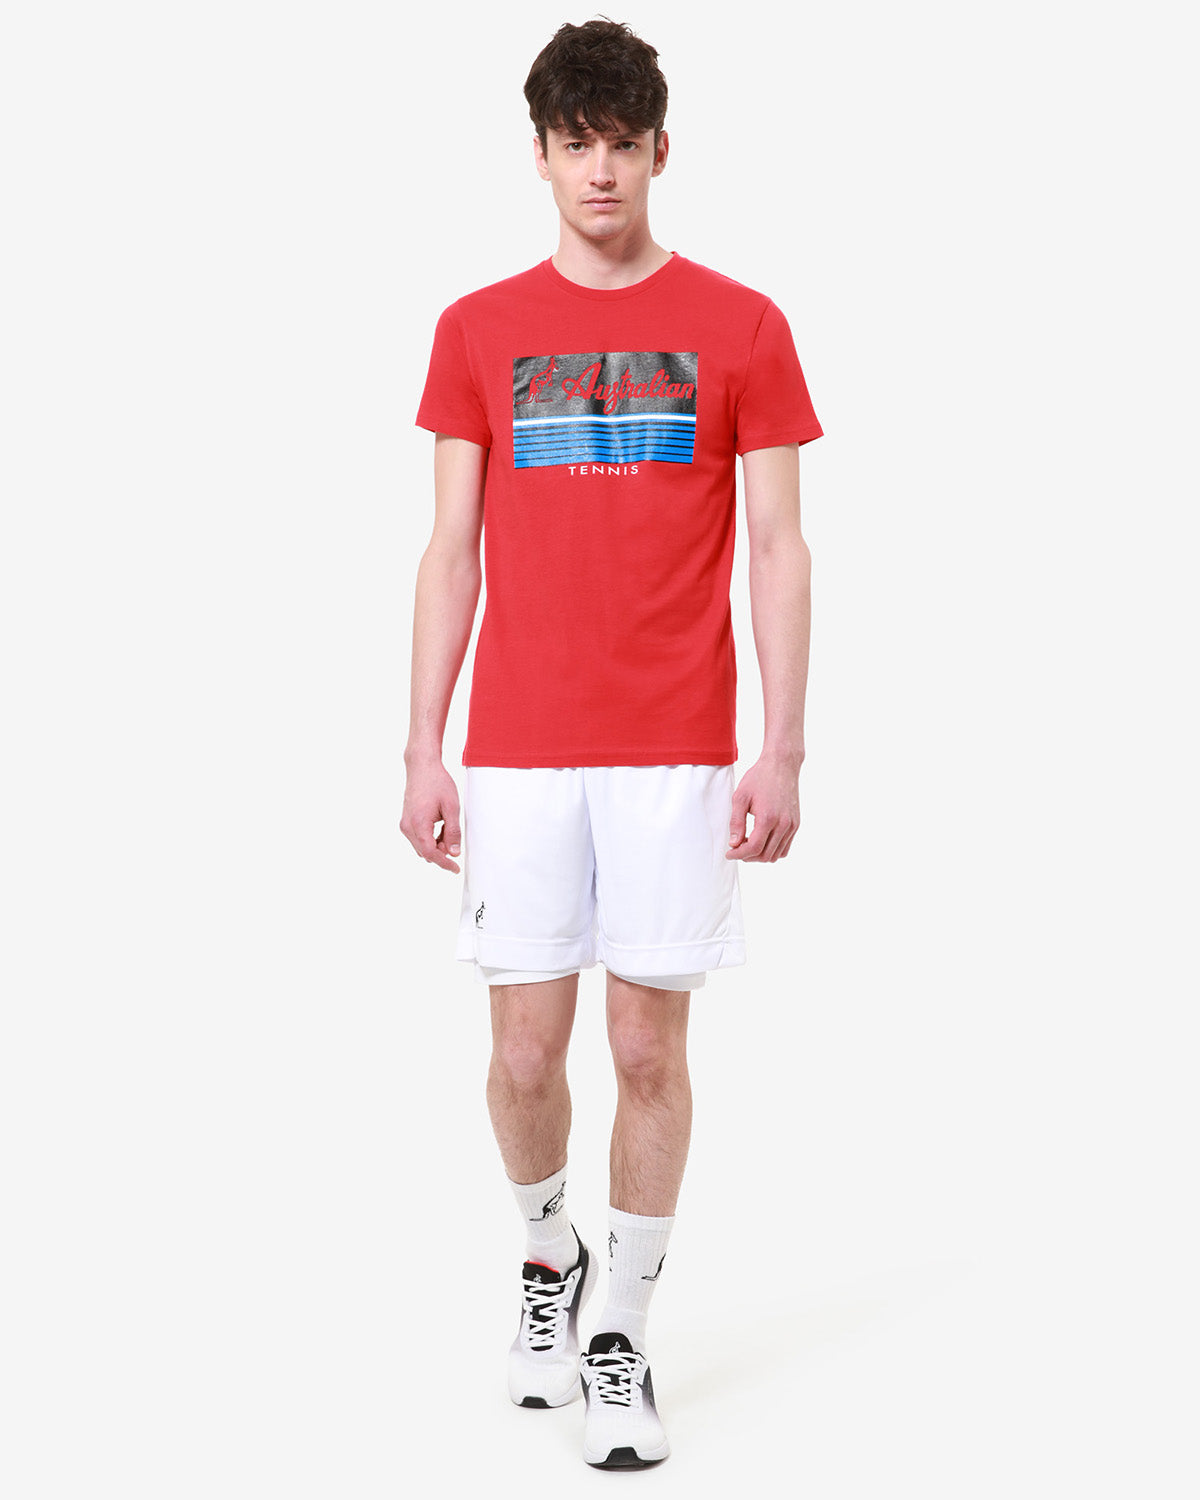 H-Lines Tennis T-Shirt: Australian Tennis